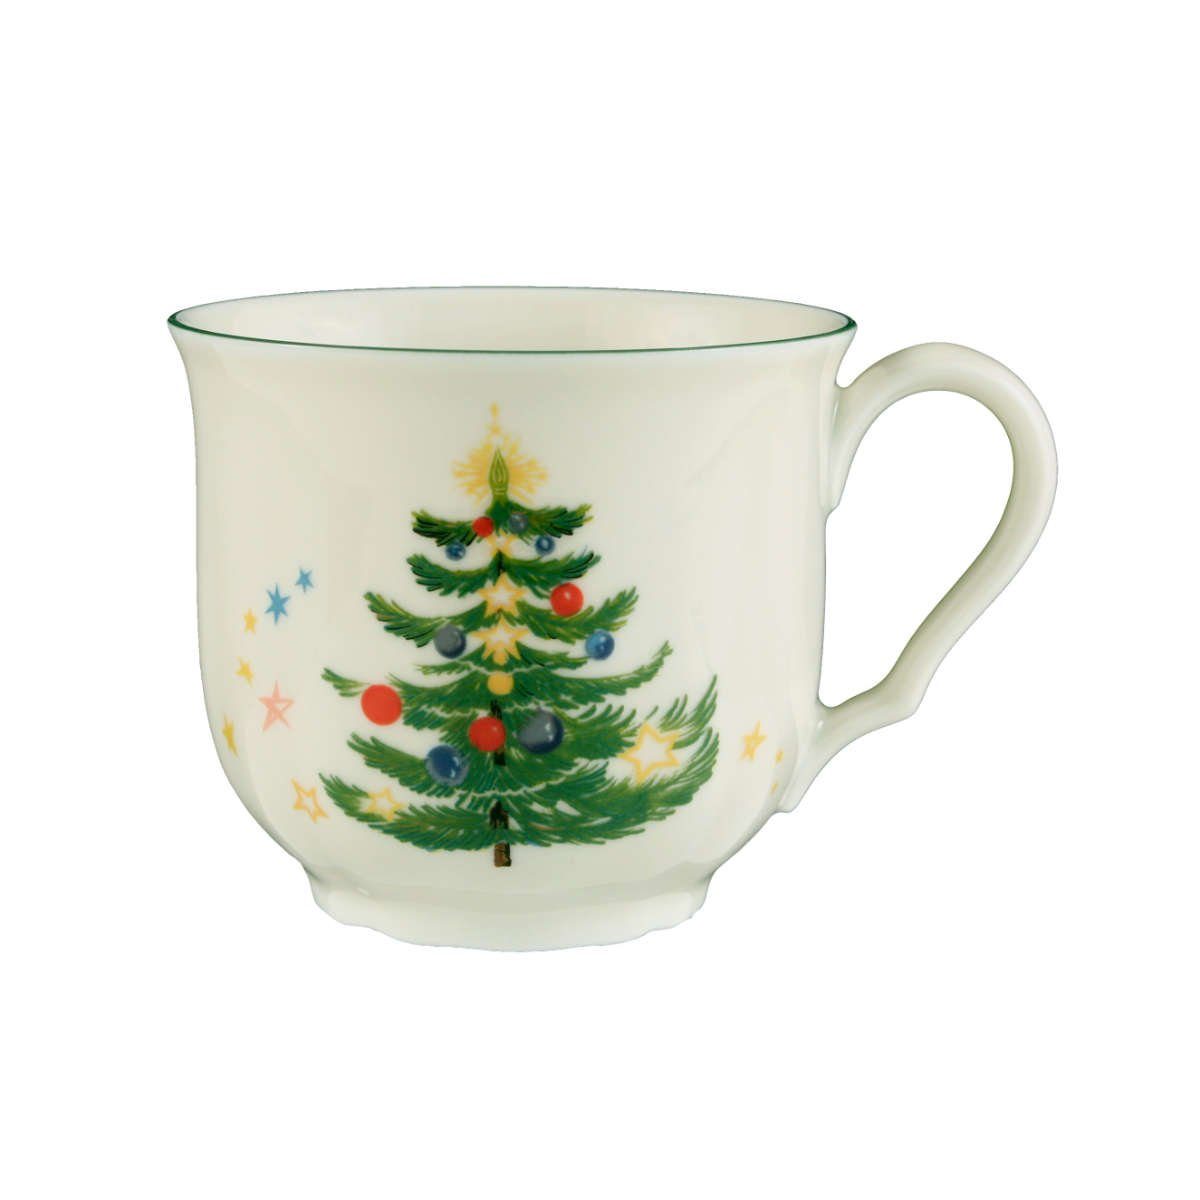 Seltmann Weiden Tasse Marie-Luise Weihnachten Weihnachtsgeschirr, Porzellan, 0,21 L